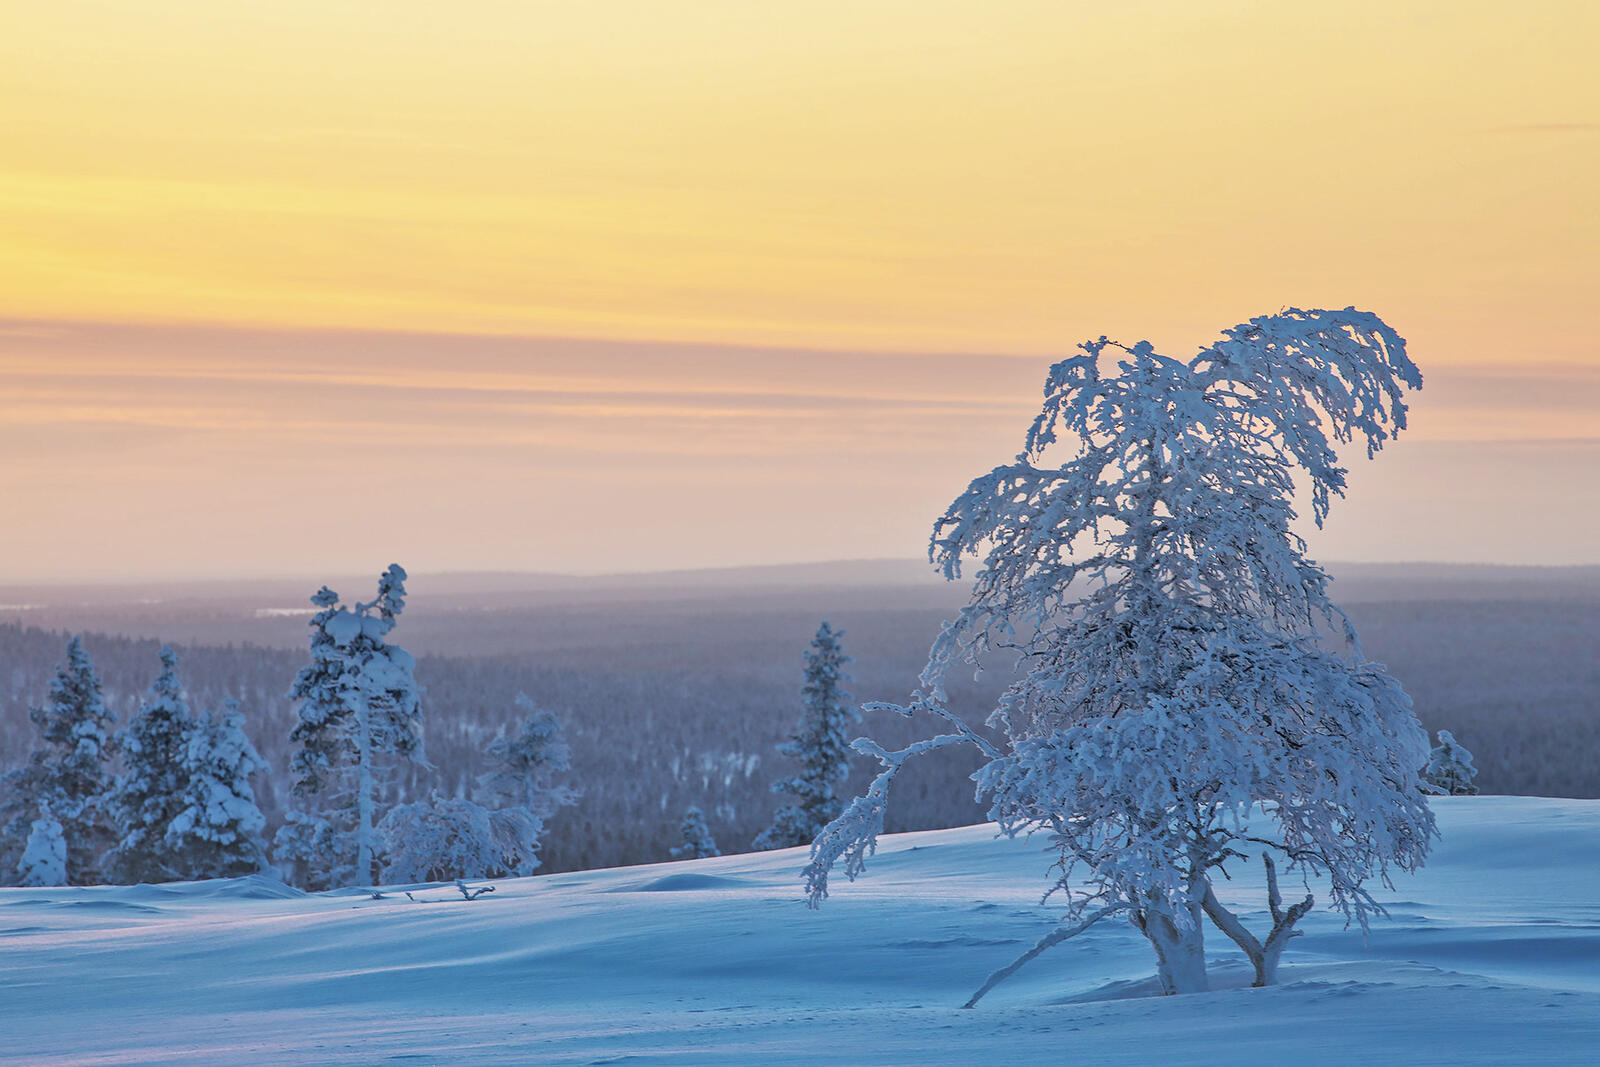 Бесплатное фото Обои лапландия, финляндия телефон на высокого качества